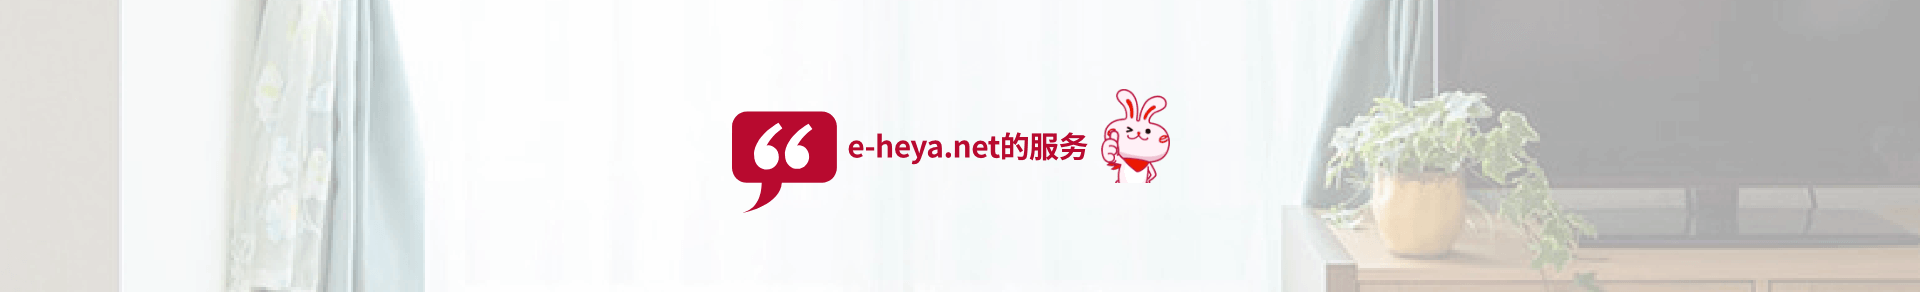 e-heya.net的服务